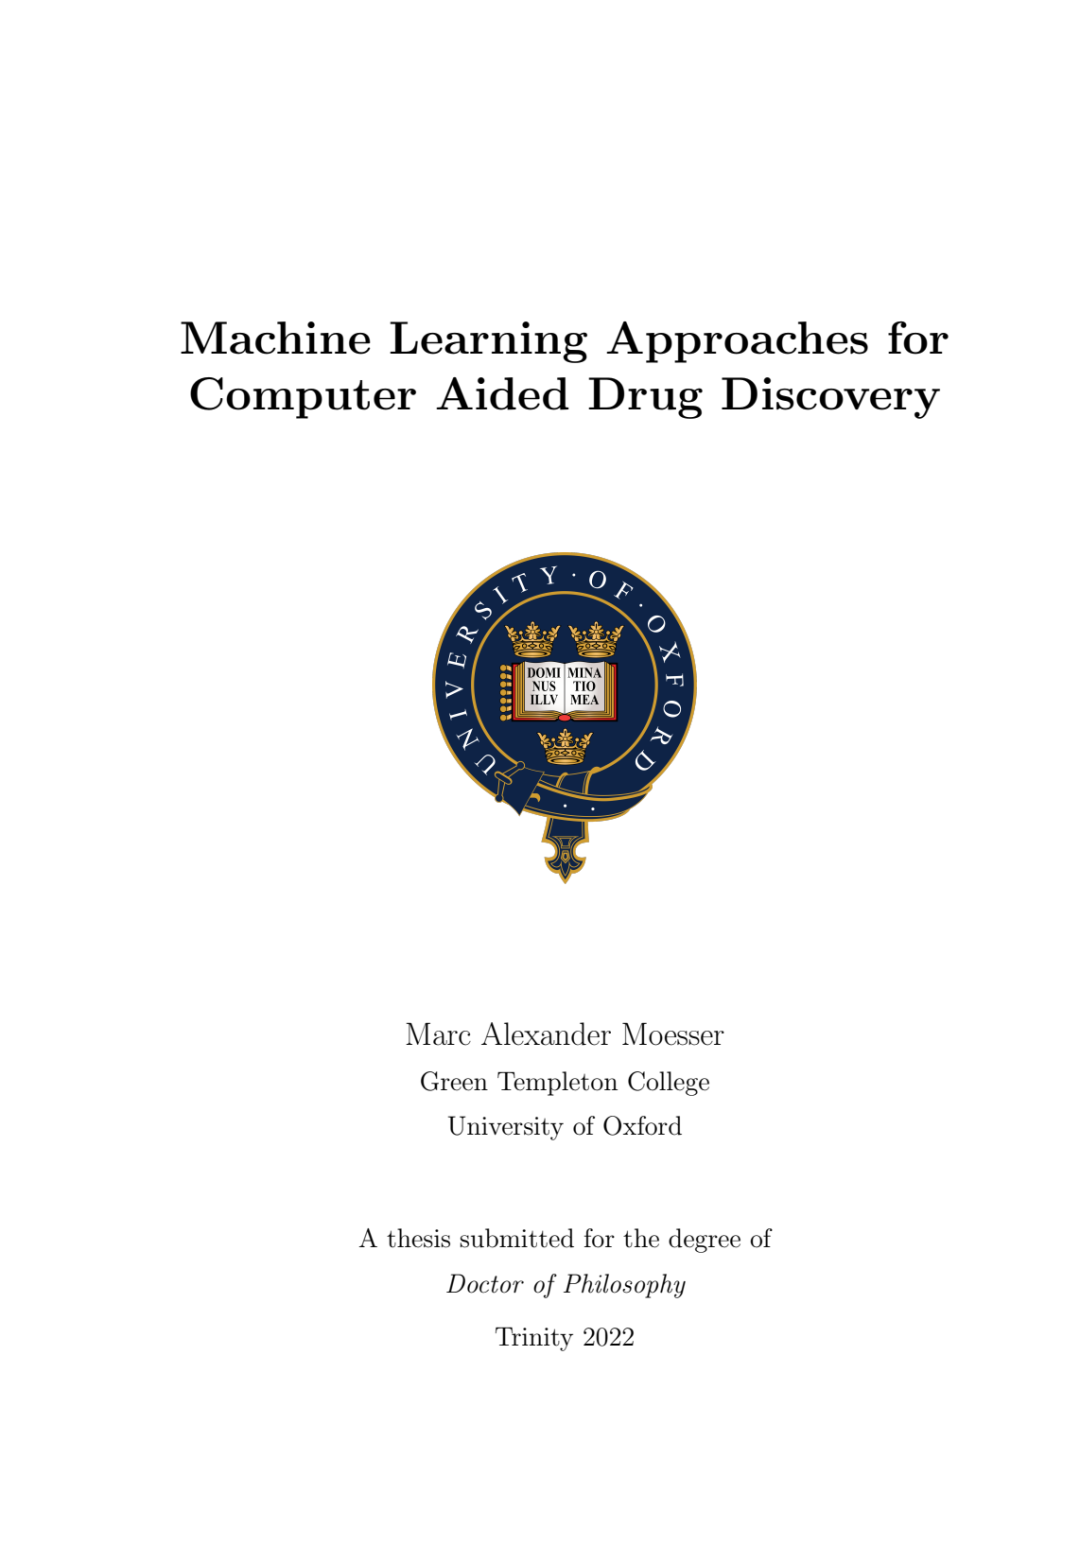 博士论文 | 用于计算机辅助药物发现的机器学习方法 309页